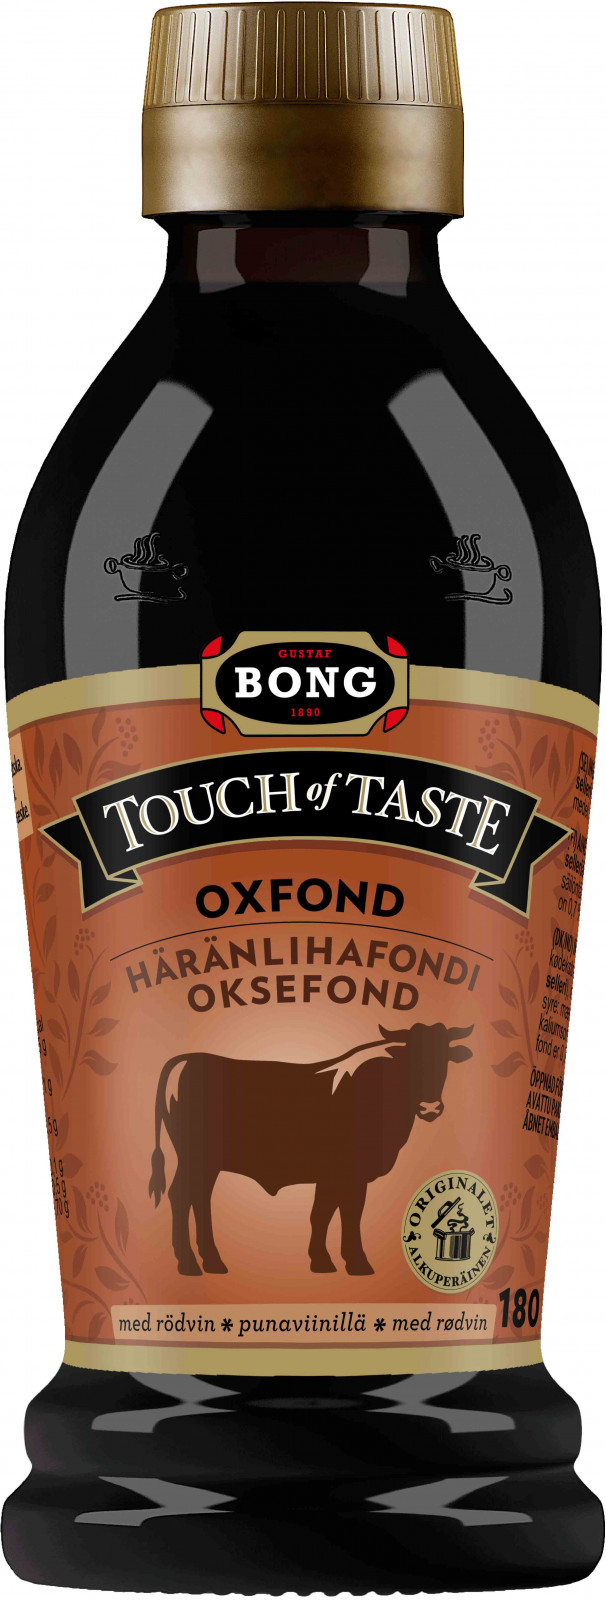 Bong touch of taste Tuottet Häränlihafondi punaviinillä